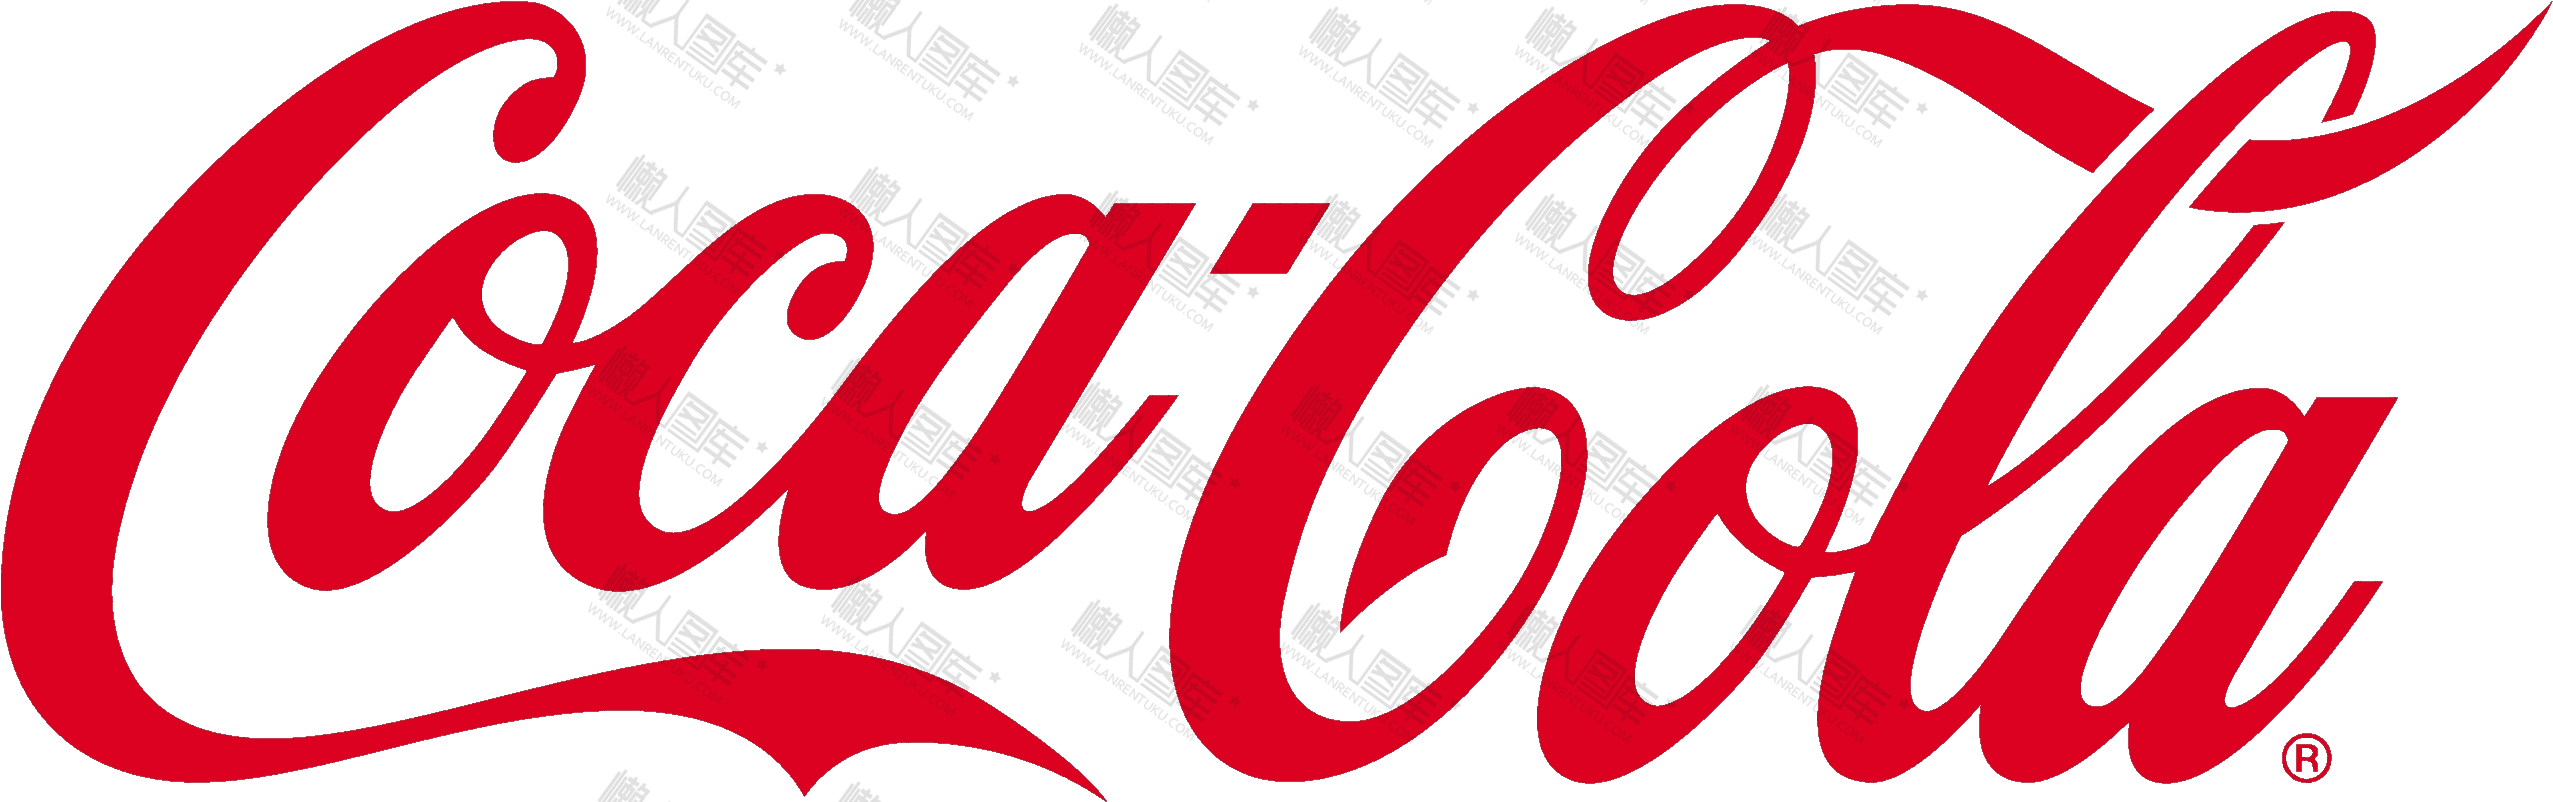 可口可乐logo图片高清